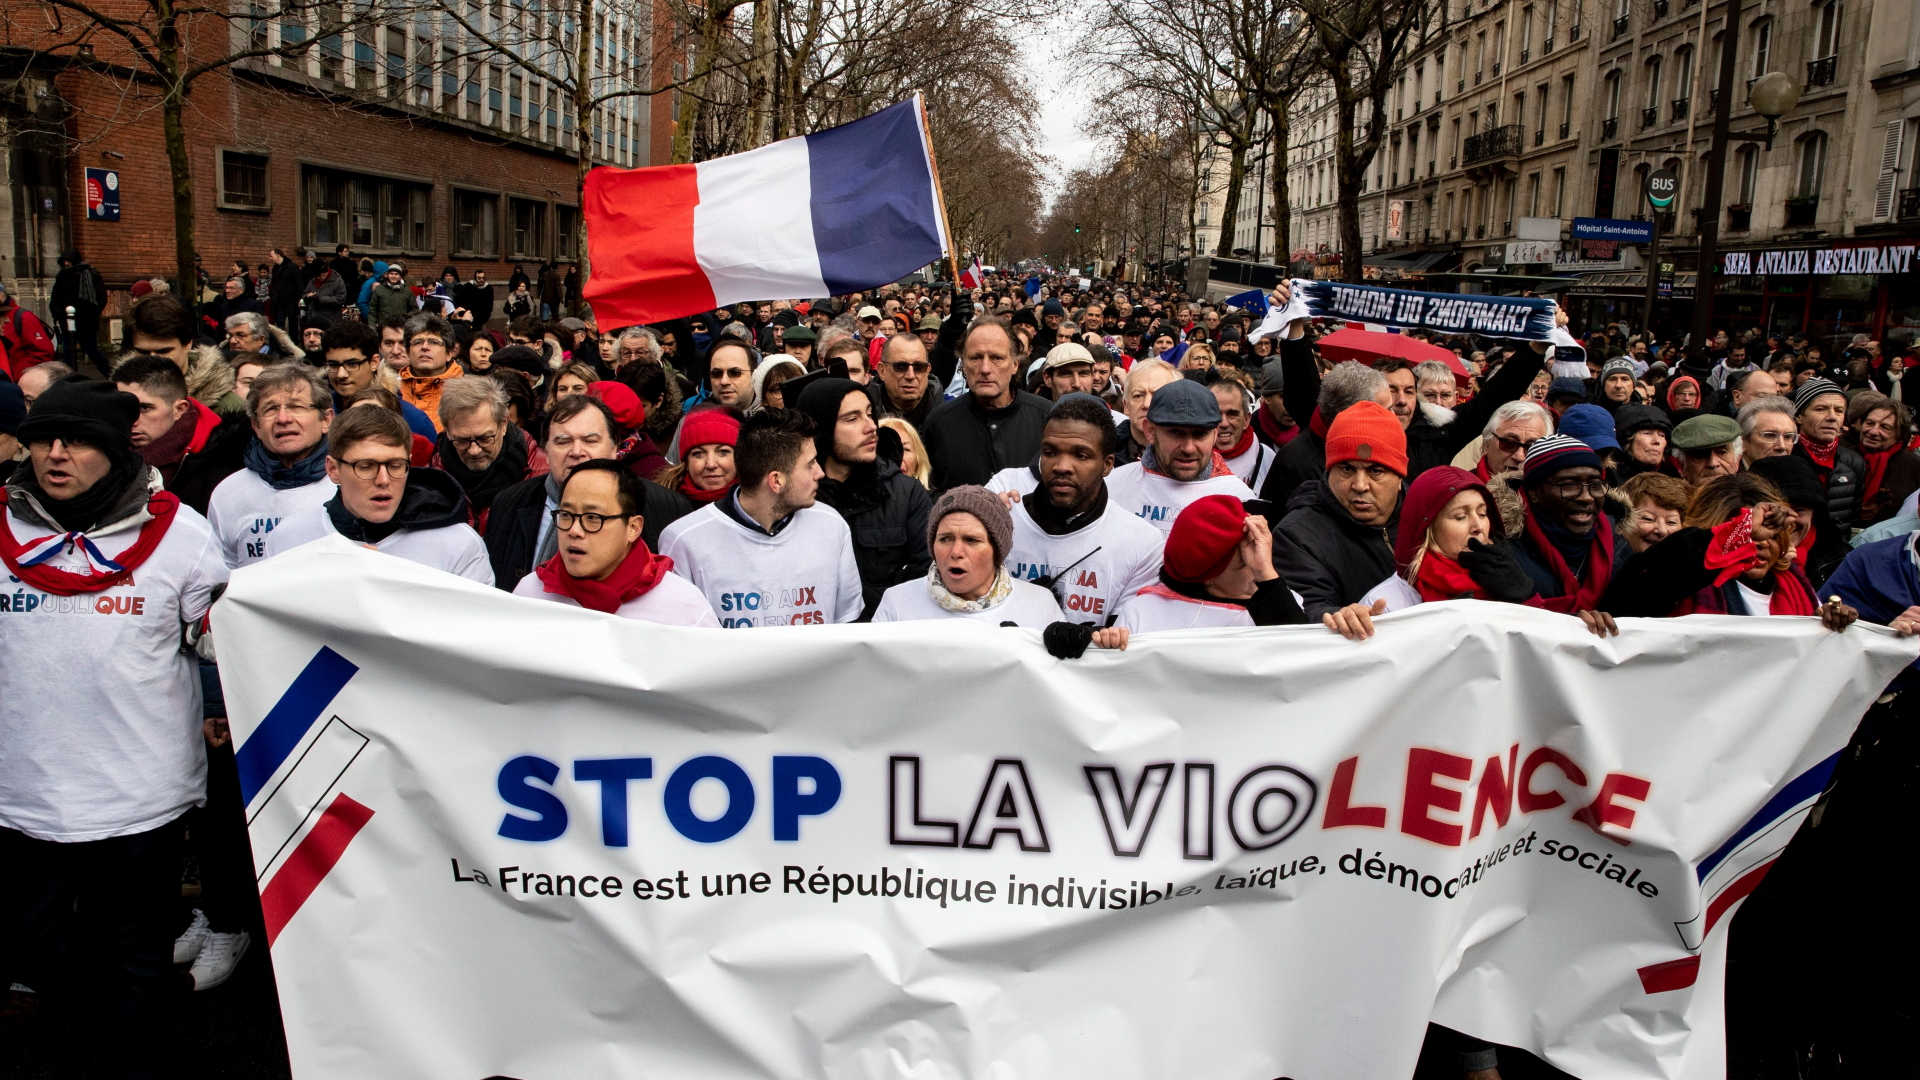 Demonstranten in roten Schals tragen ein Plakat "Stoppt die Gewalt" | ETIENNE LAURENT/EPA-EFE/REX